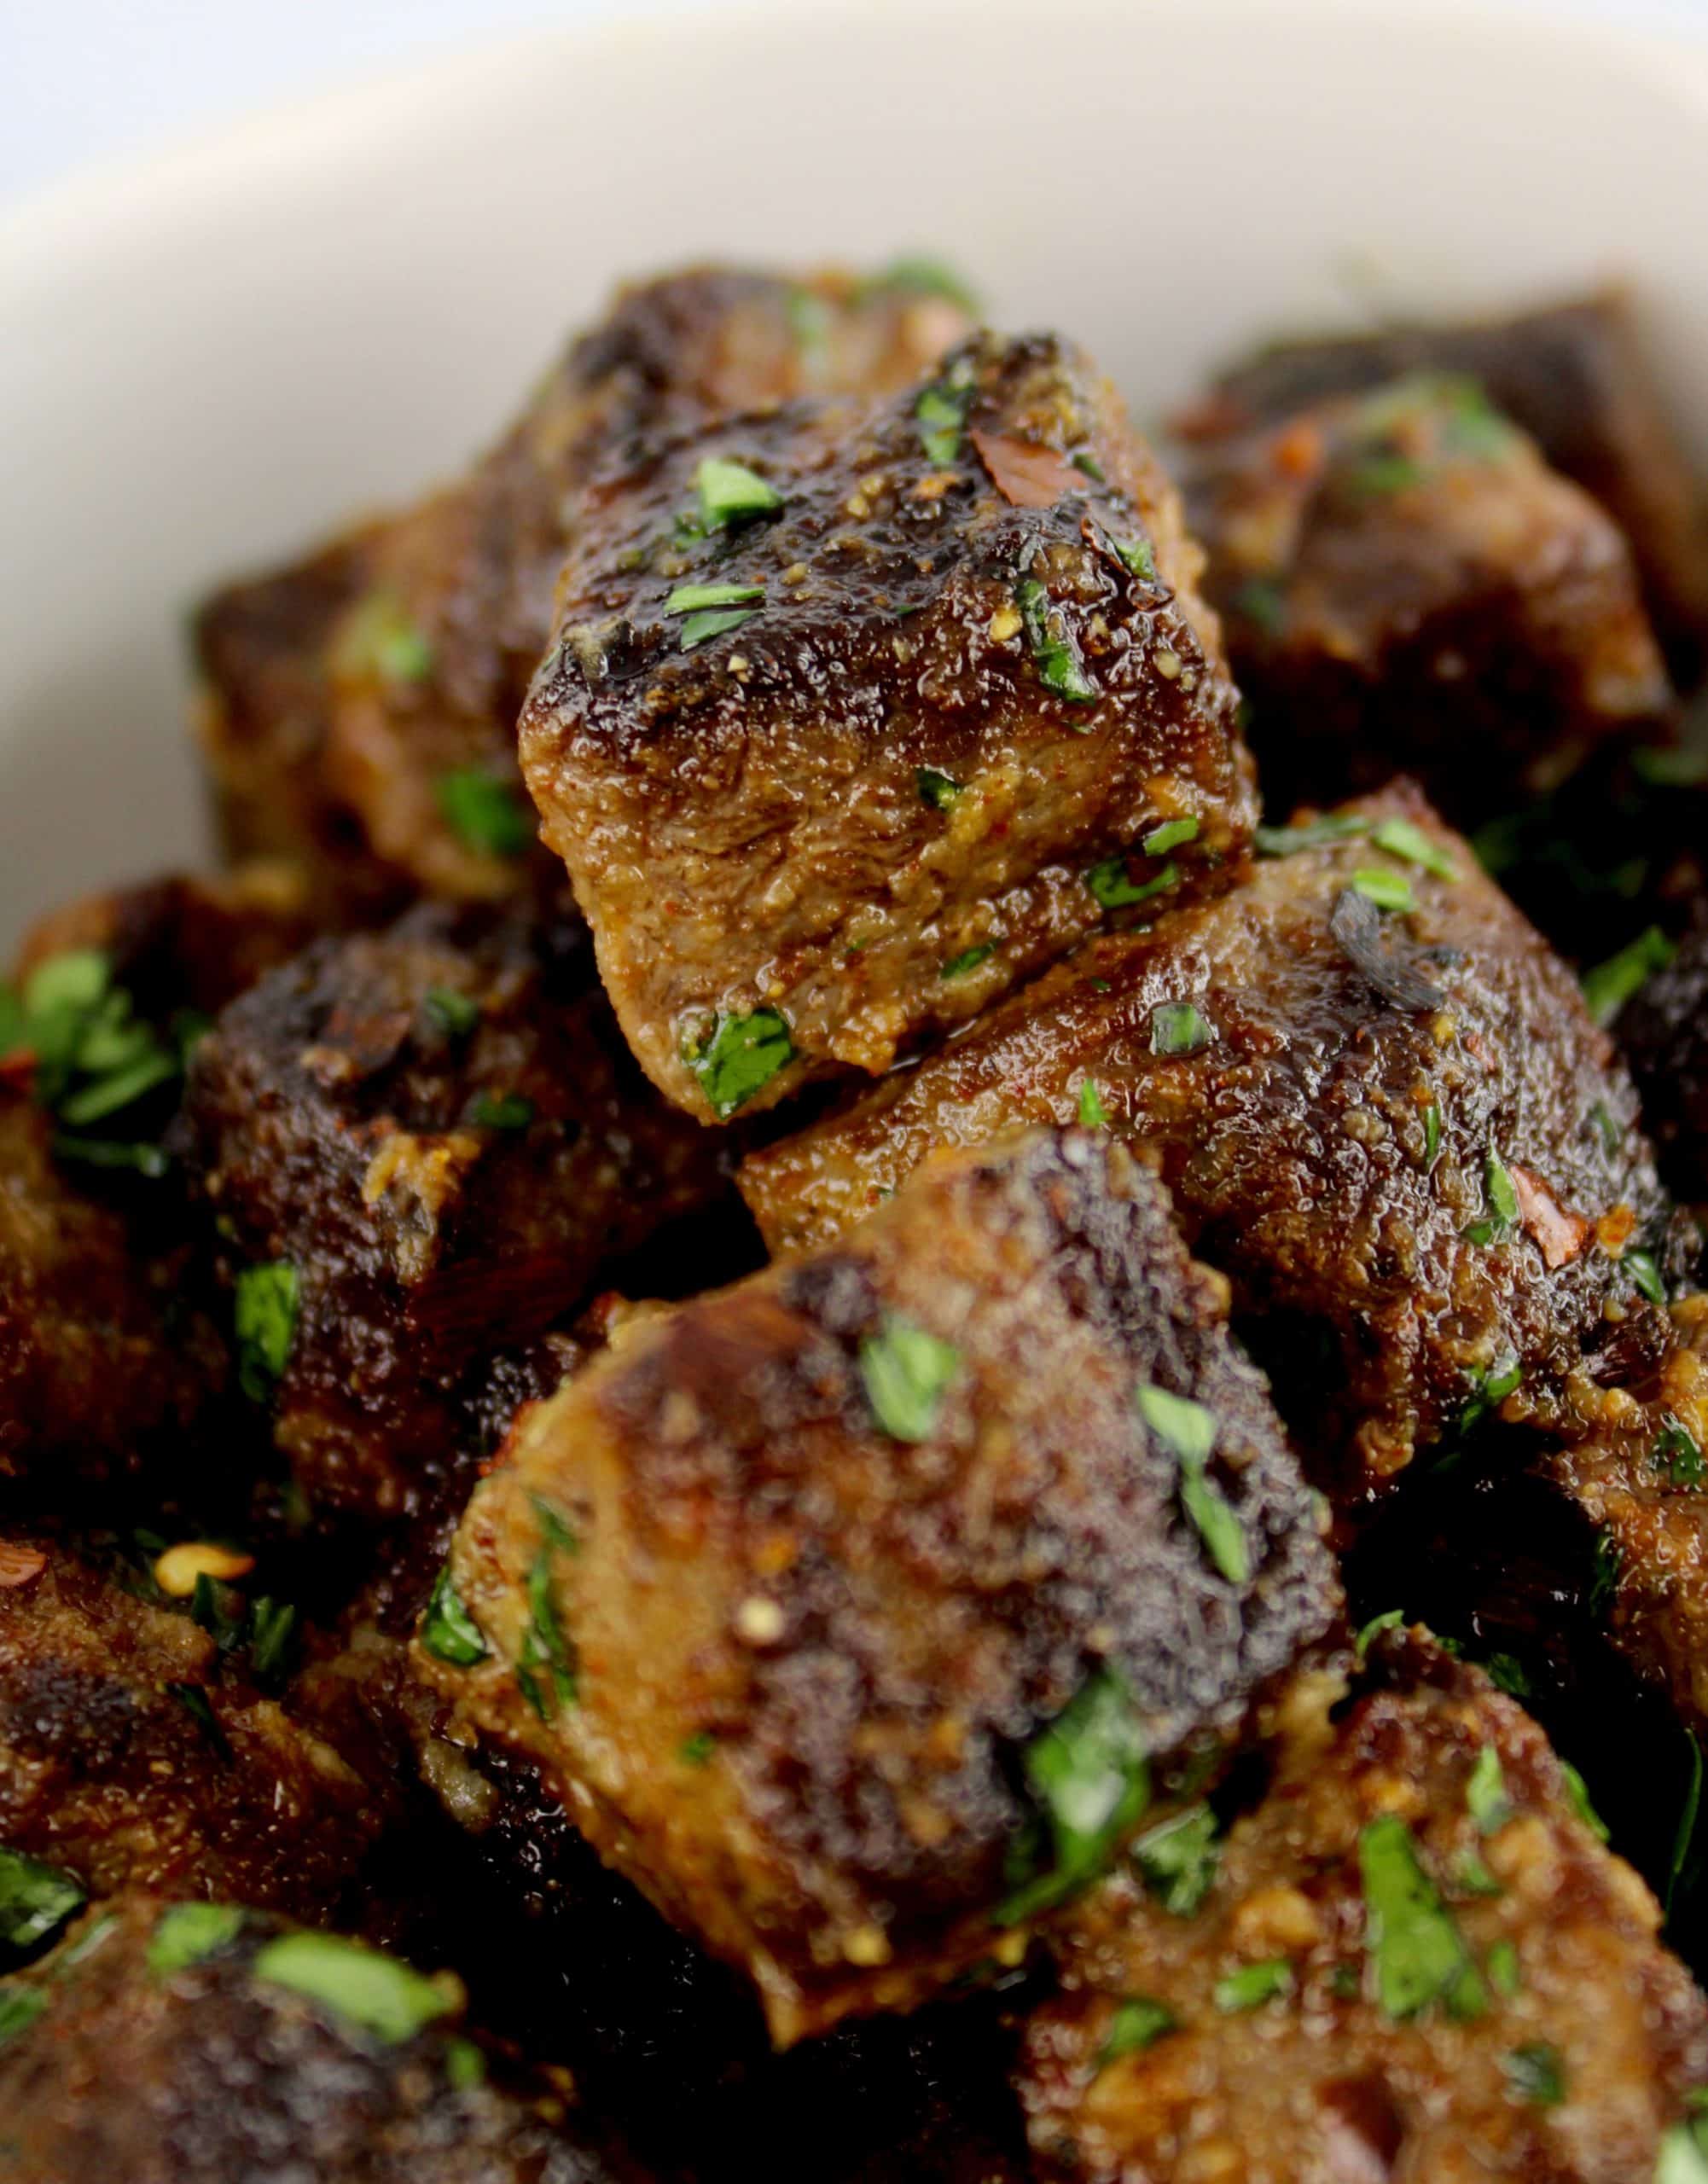 Air Fryer Steak Bites with parsley garnish